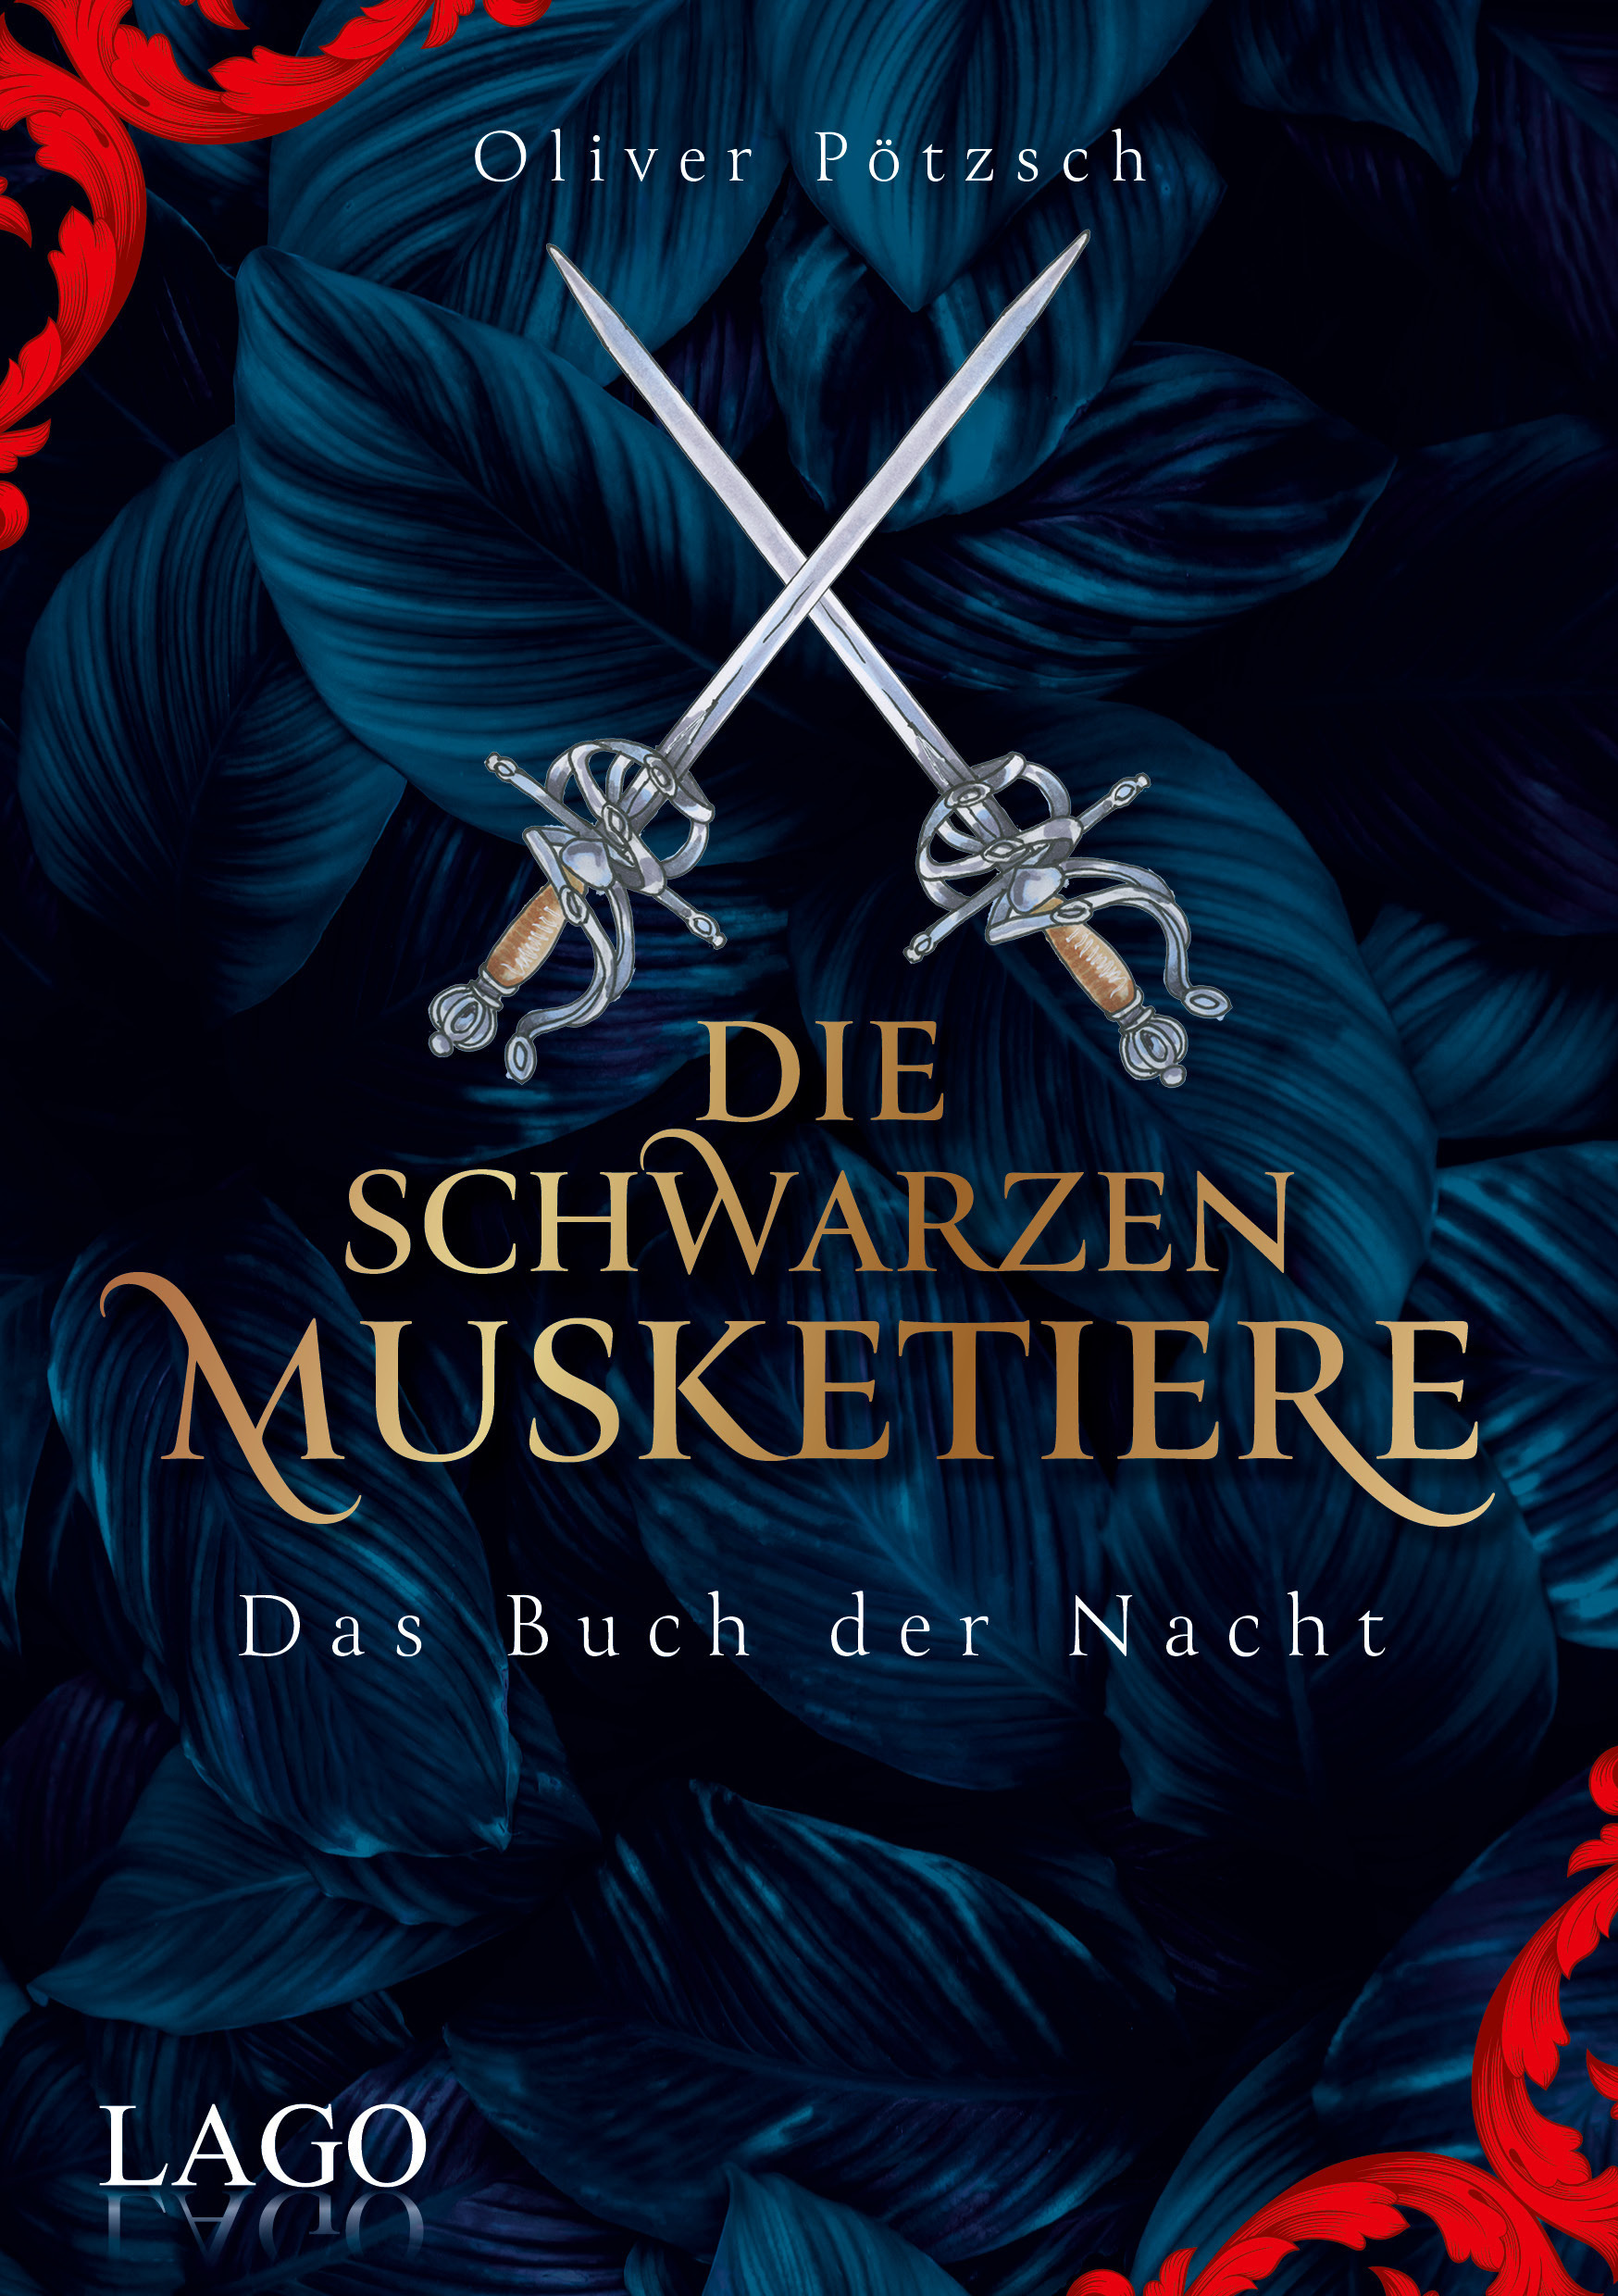 Oliver PötzschDie Schwarzen Musketiere. Das Buch der Nacht (Band 1)